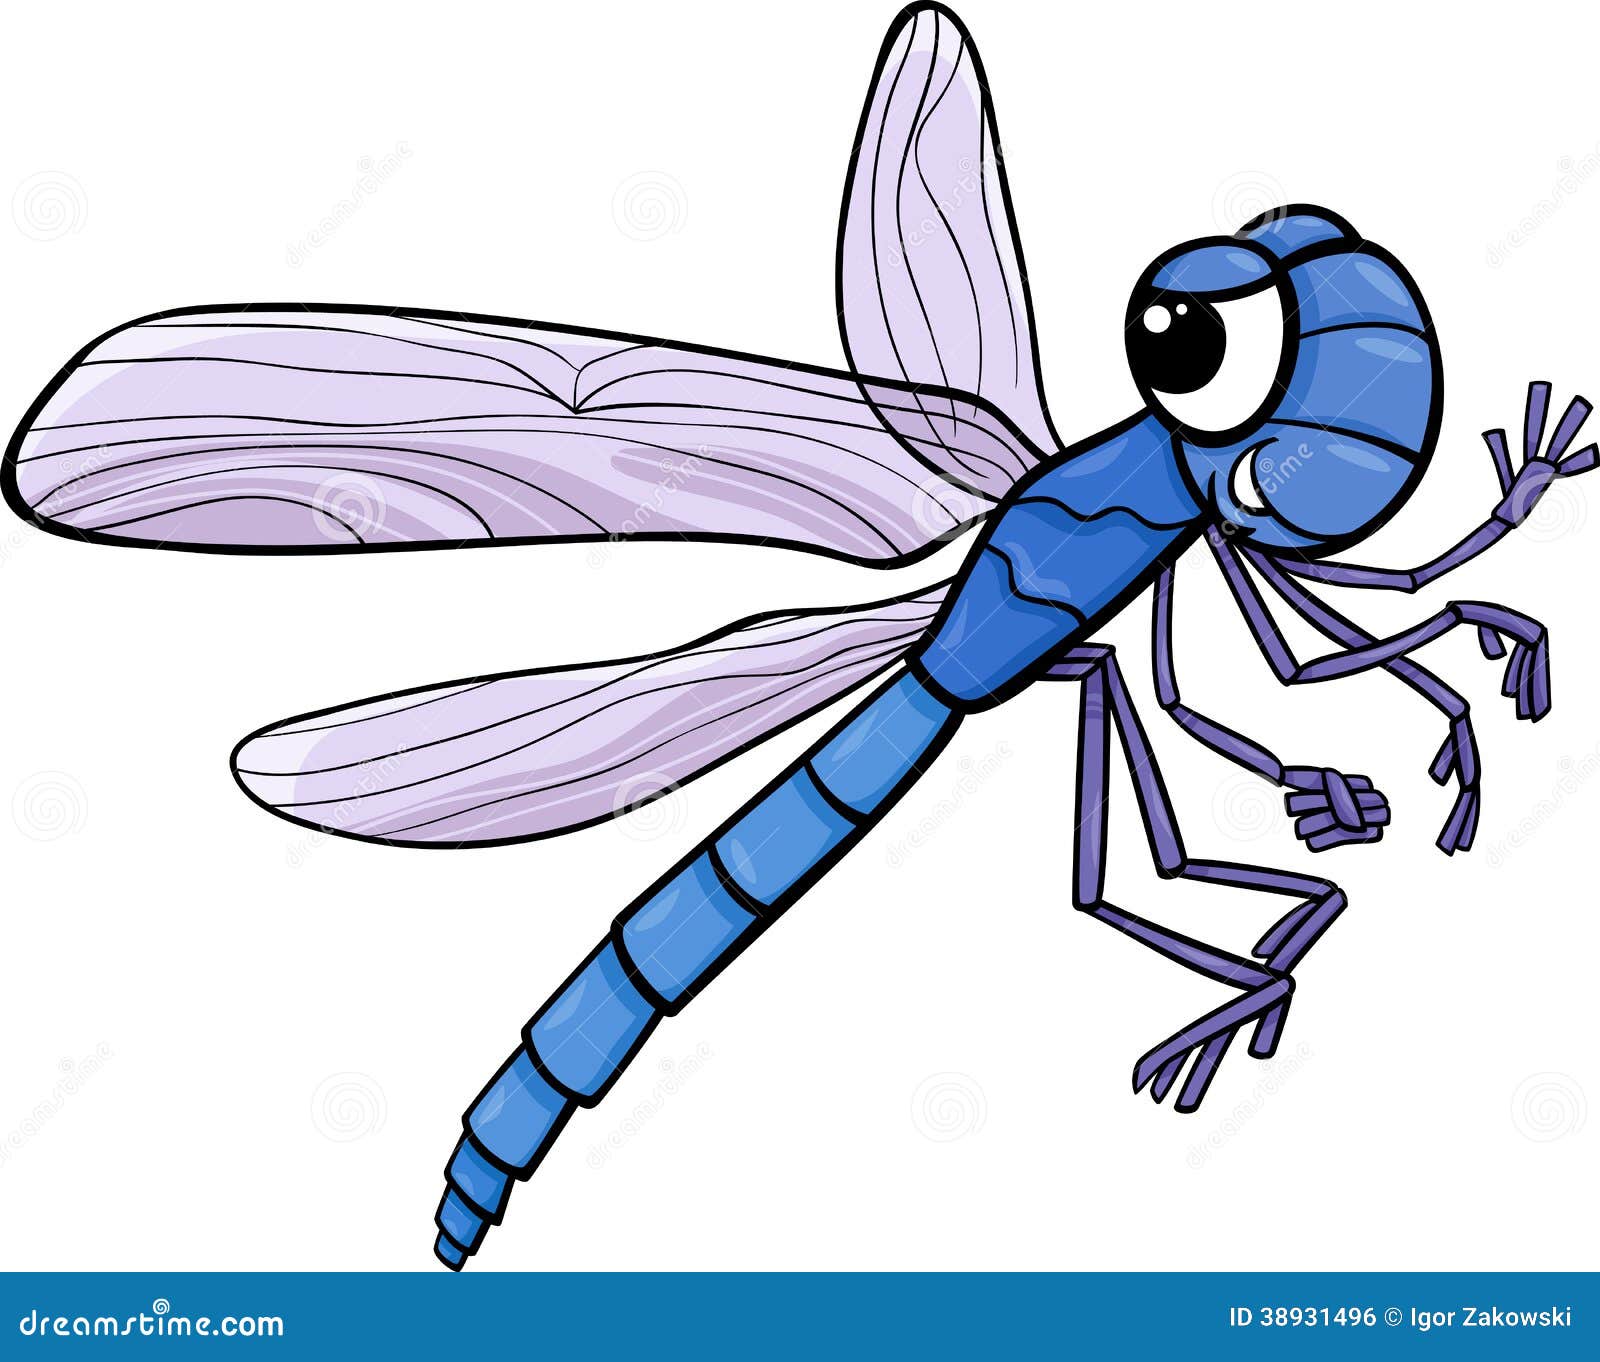 cartoon fly clipart - photo #33